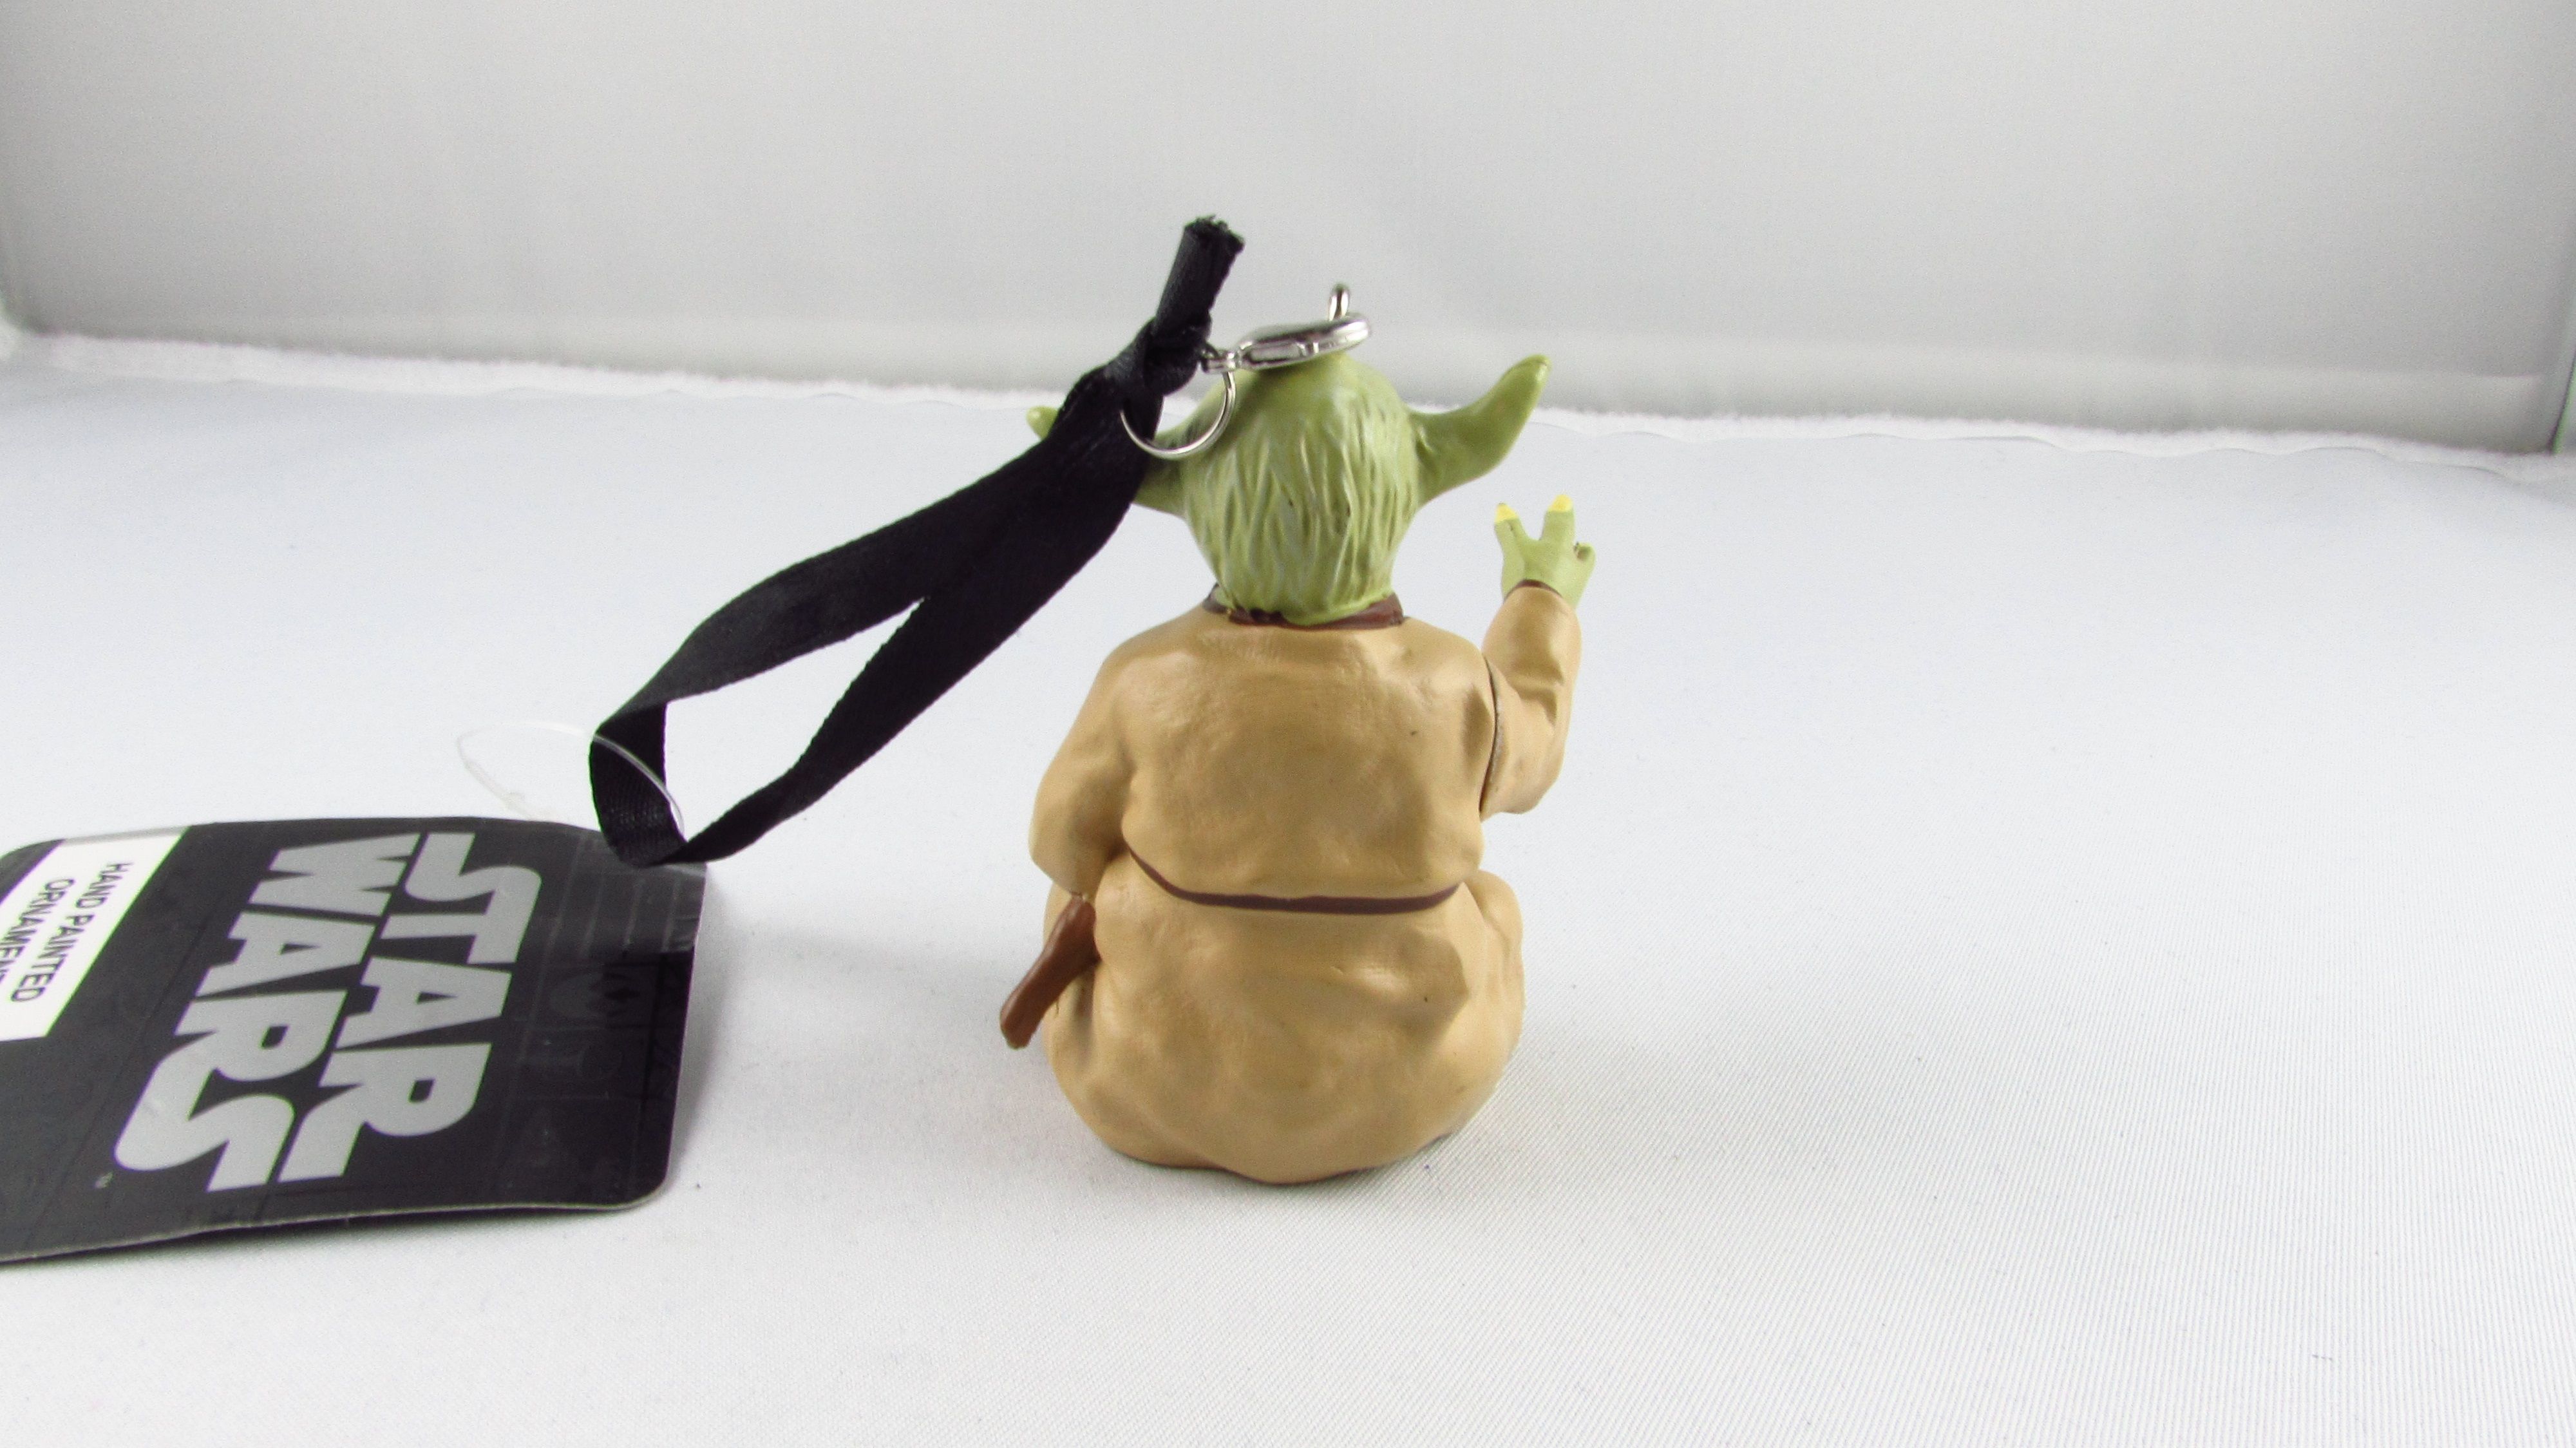 DISNEY Lucasfilm Star Wars Ręcznie malowana Yoda Figurka Zawieszka